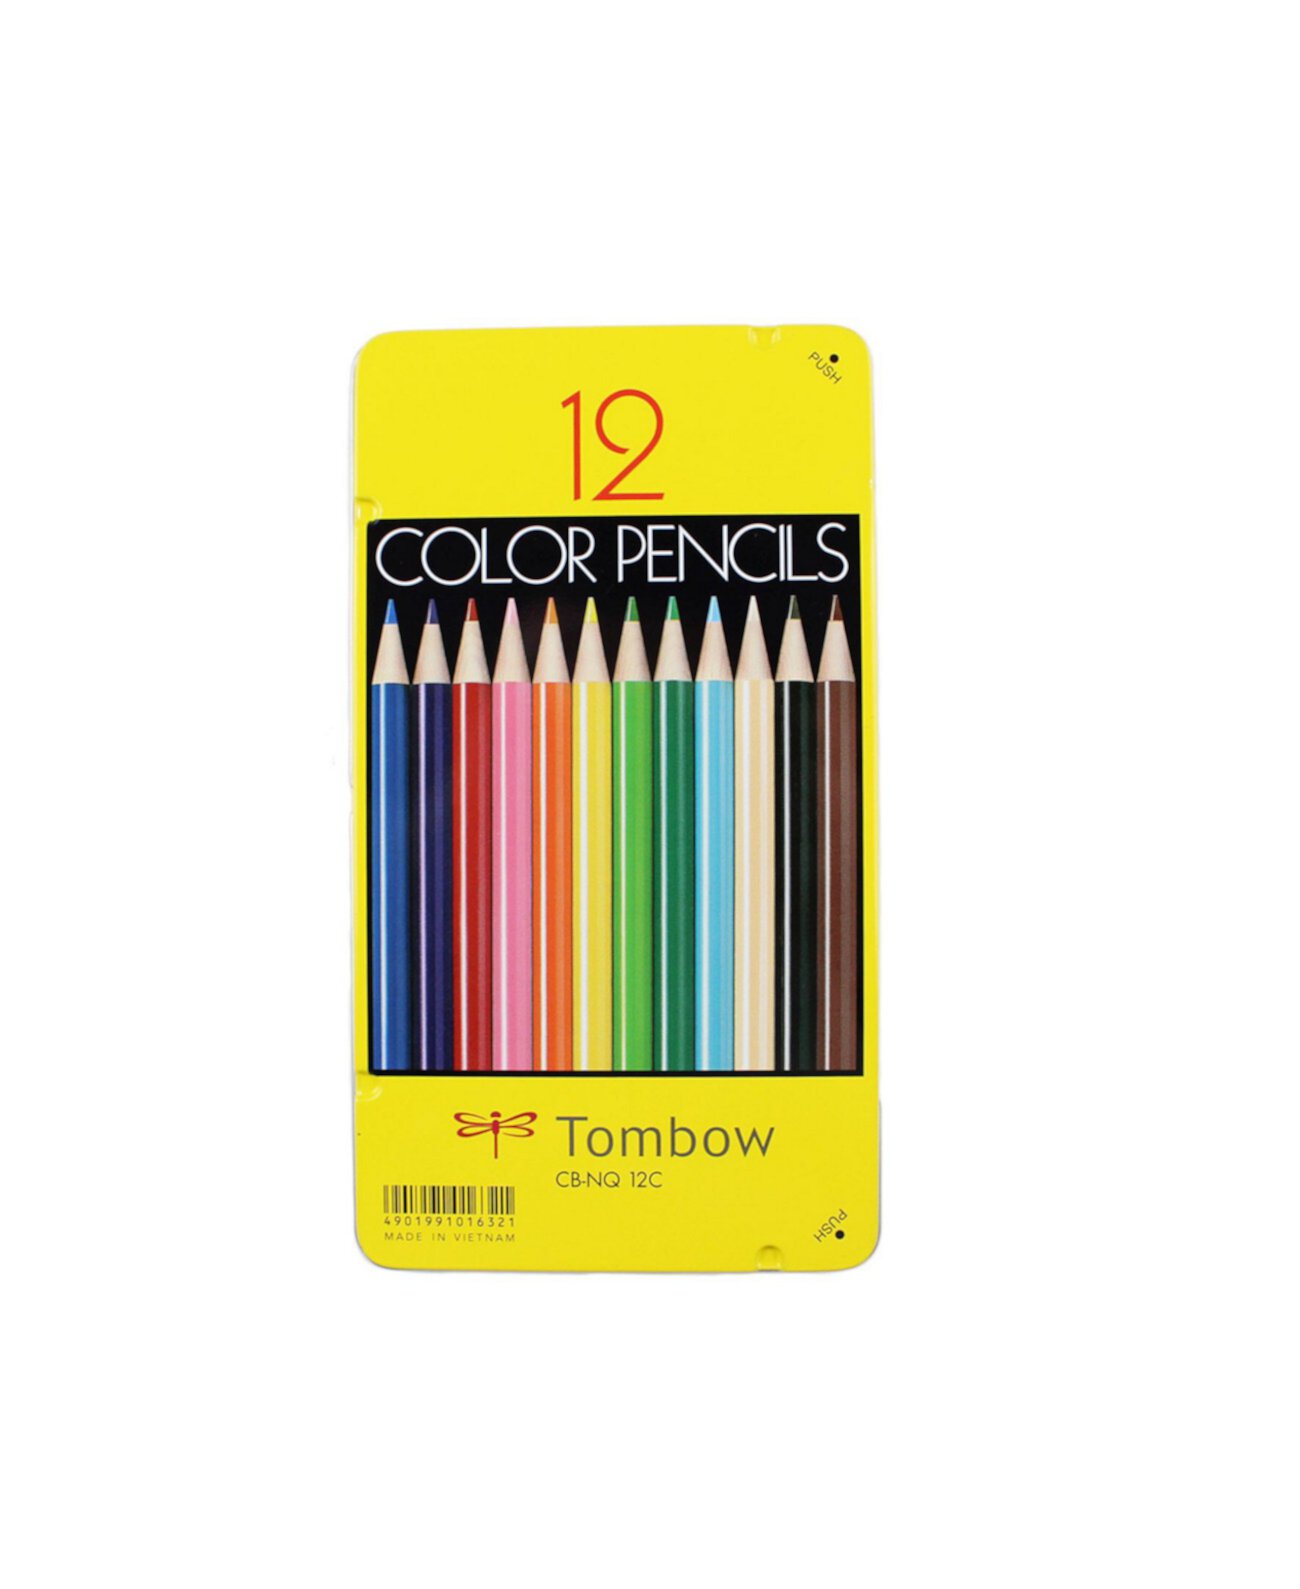 Цветные карандаши серии 1500, набор из 12 предметов Tombow